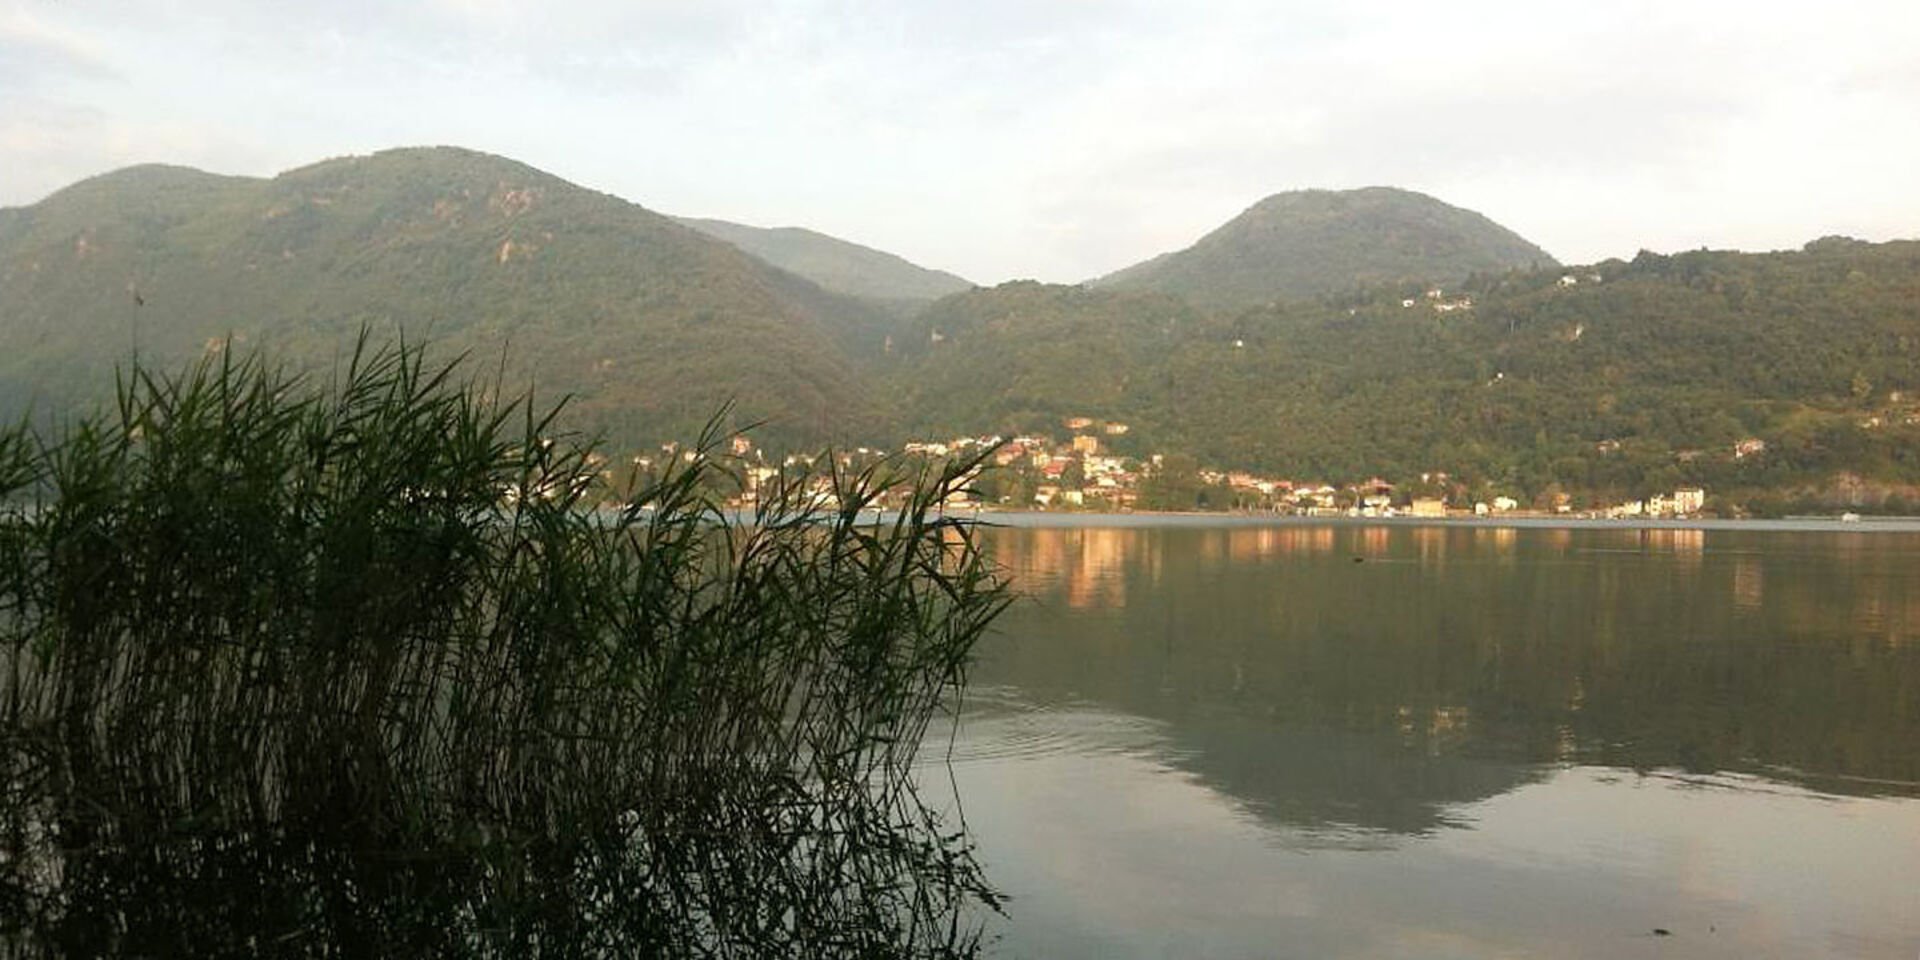  Lago di Lugano  